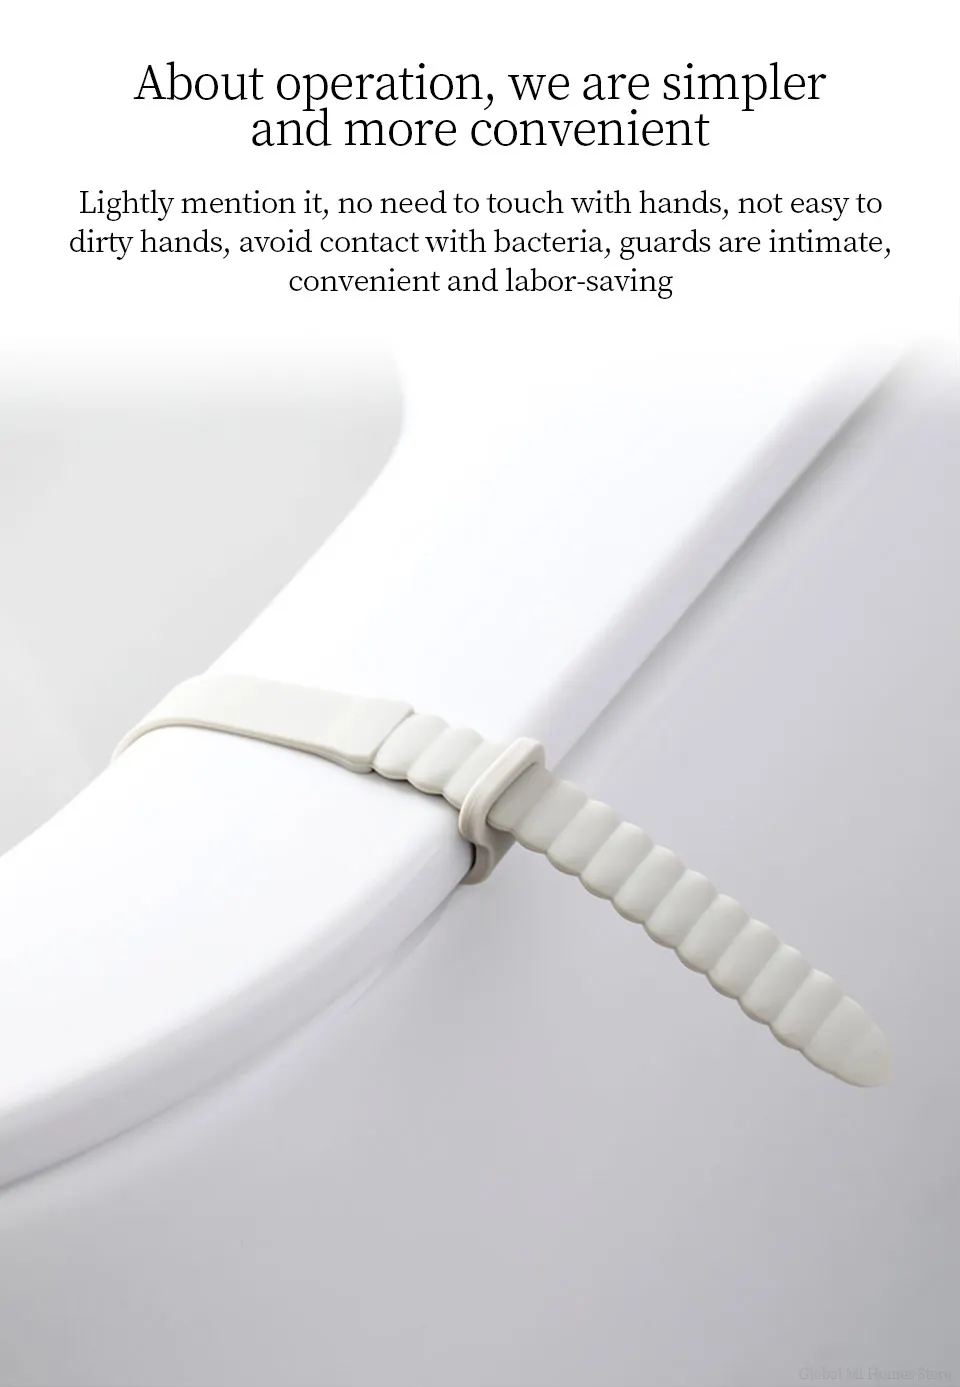 Xiaomi JORDAN& JUDY крышка туалетного подъемника Бытовая анти-Грязная рука открытый унитаз и поставить туалетный Лифт на унитаз крышка открывалка